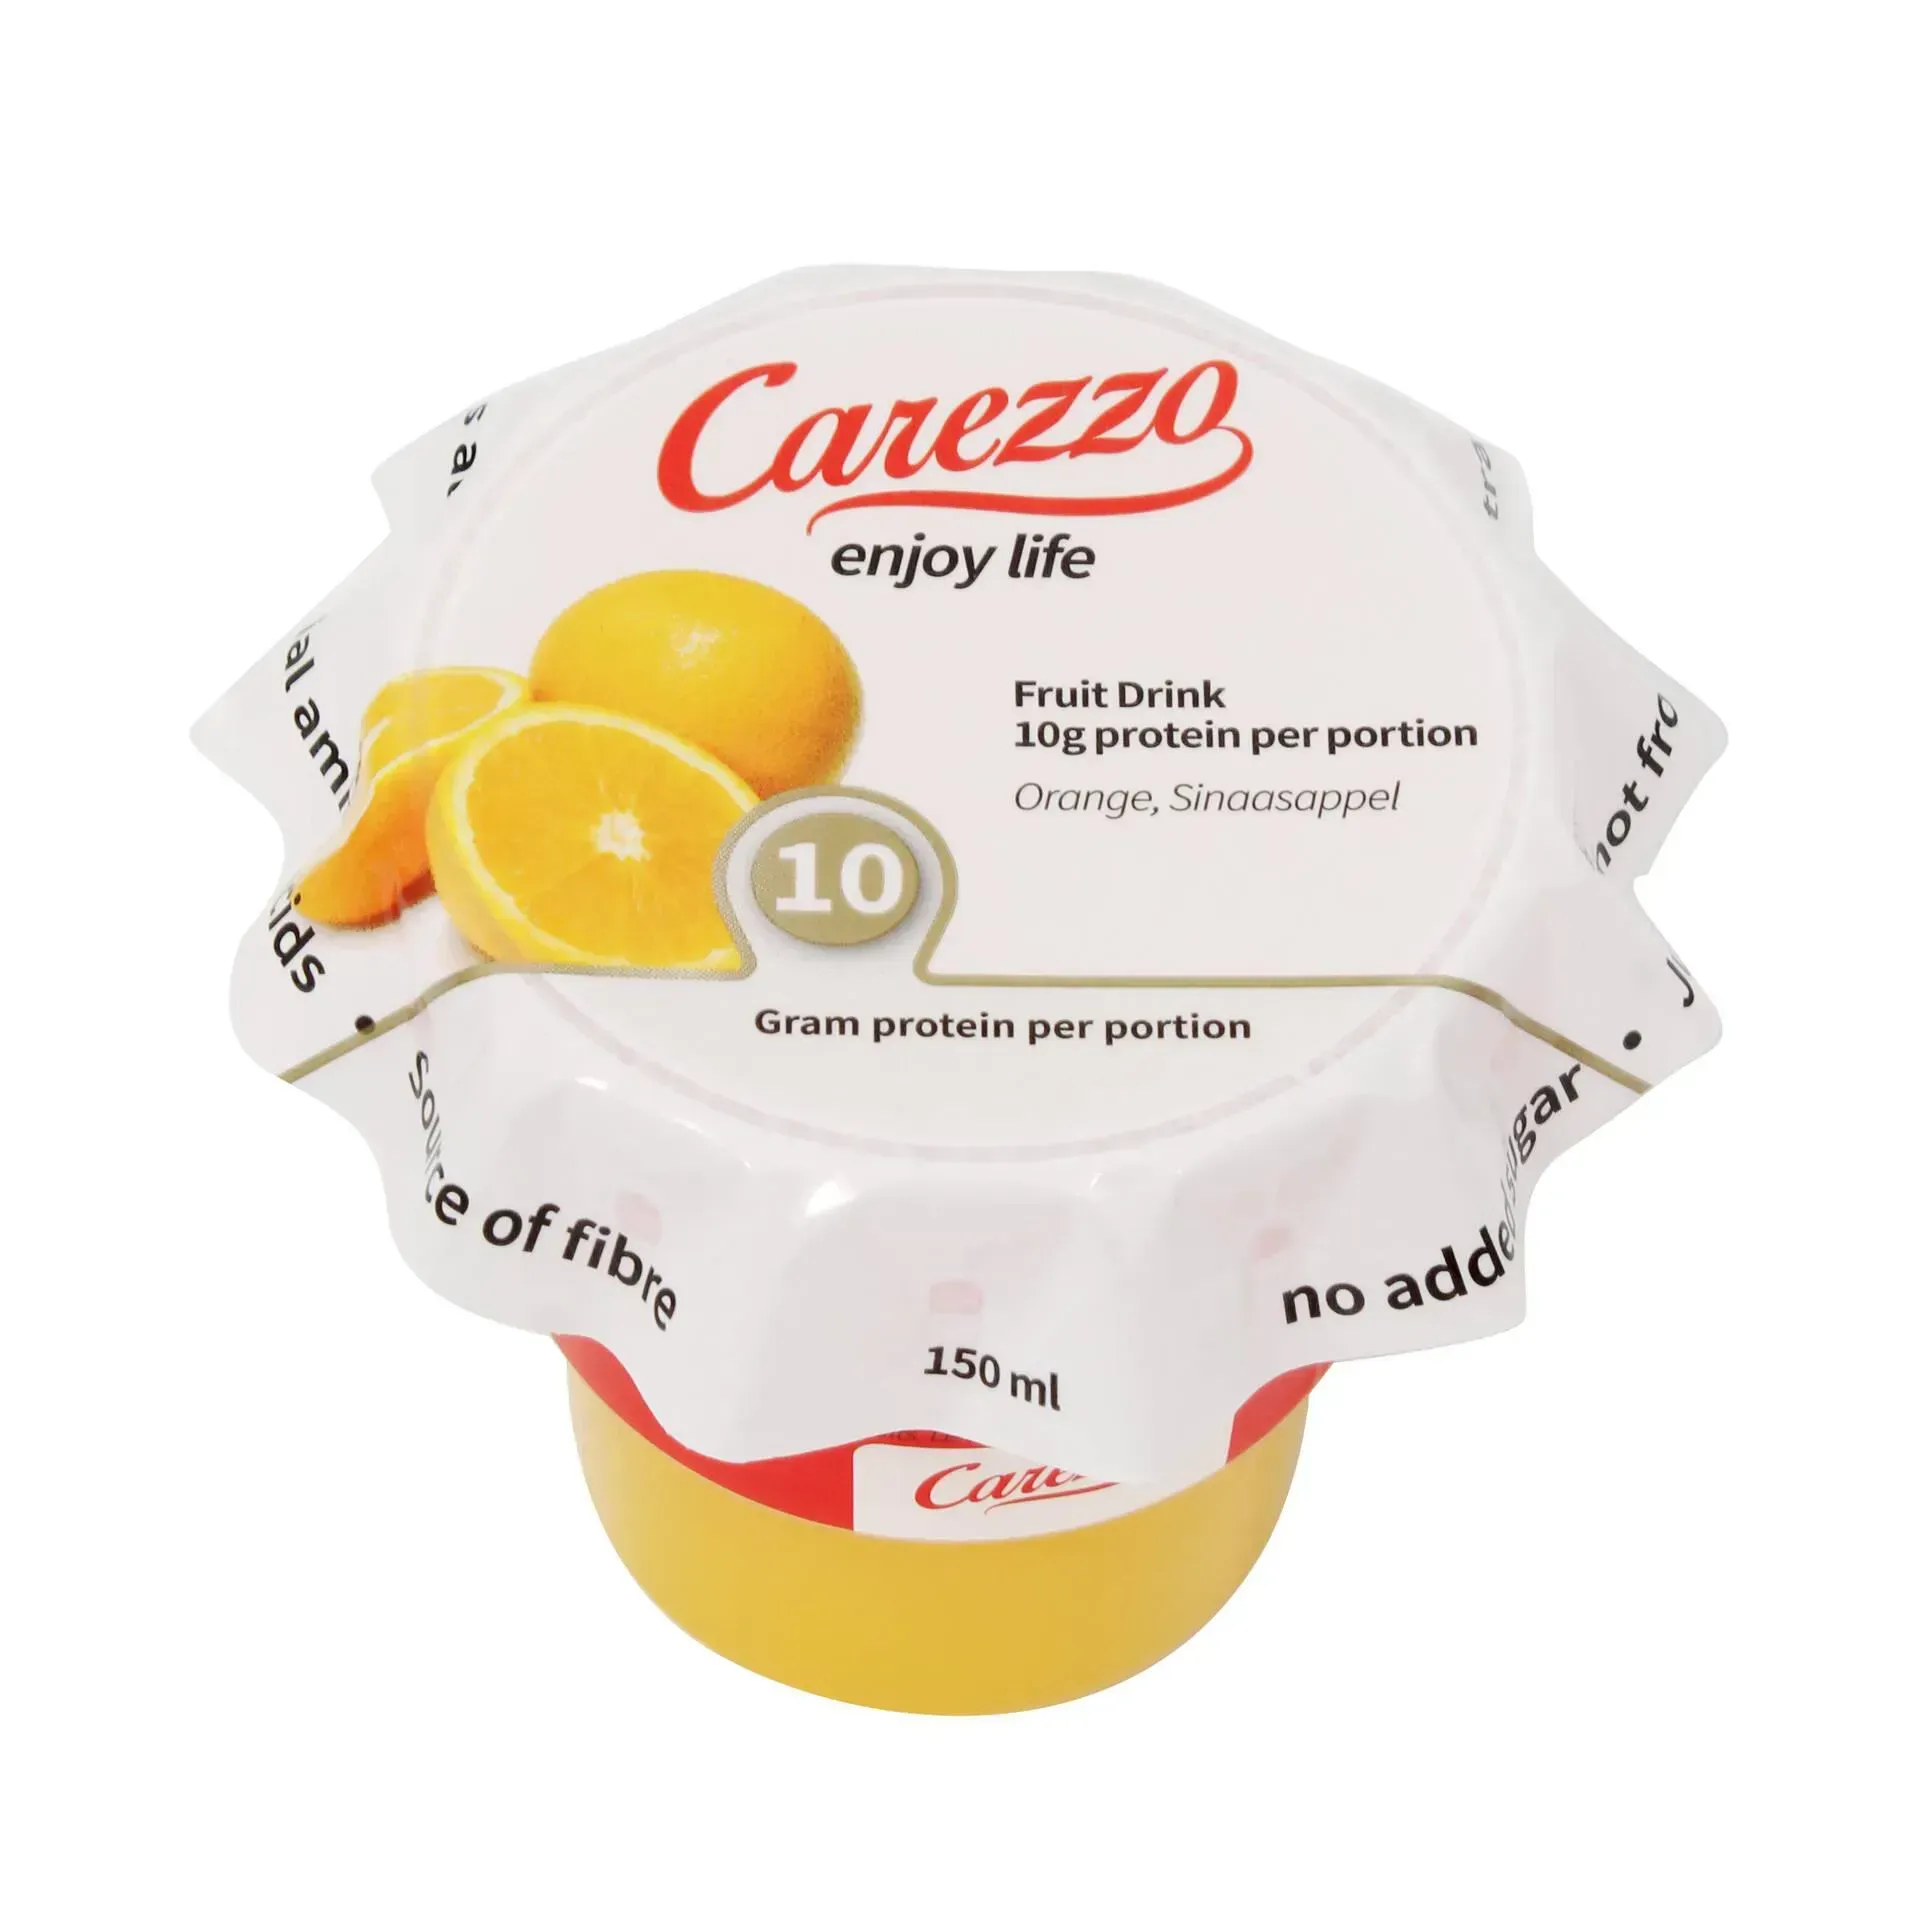 Carezzo: een uniek voedingsconcept met extra eiwit